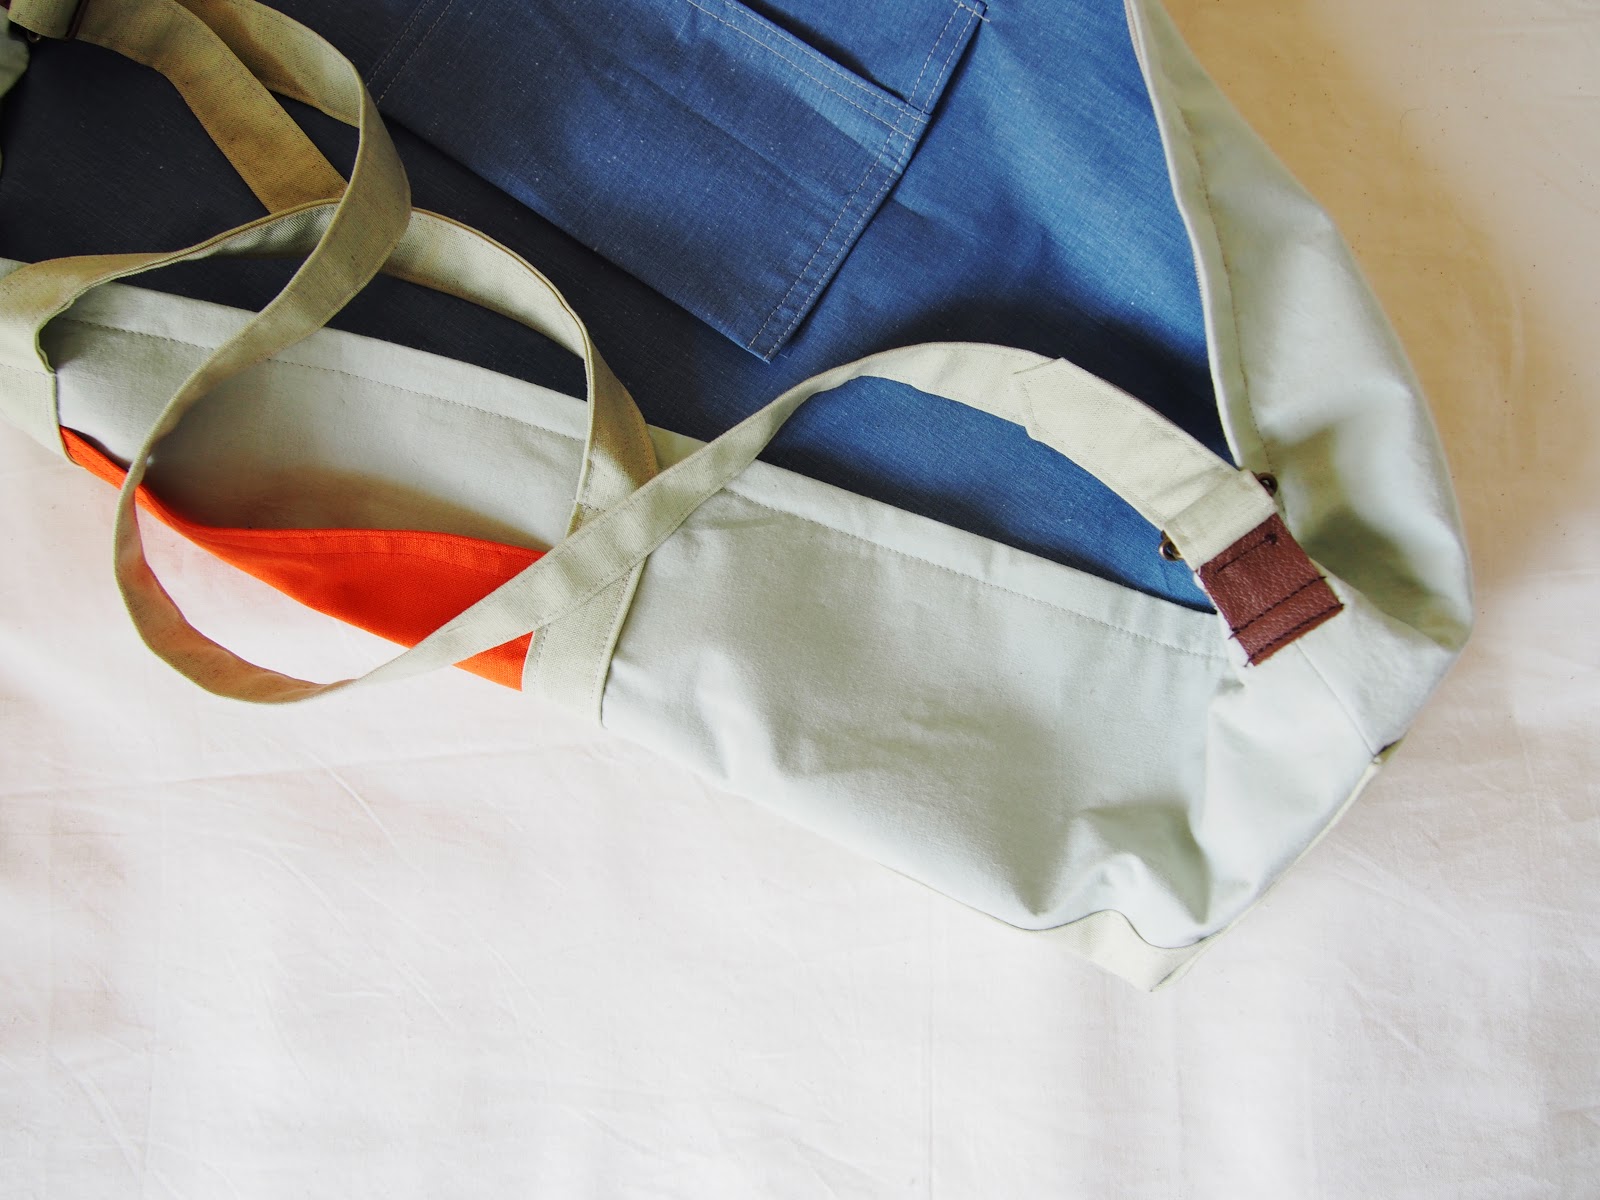 なつめ縫製所のブログ: 縫製所のオーダーメイド